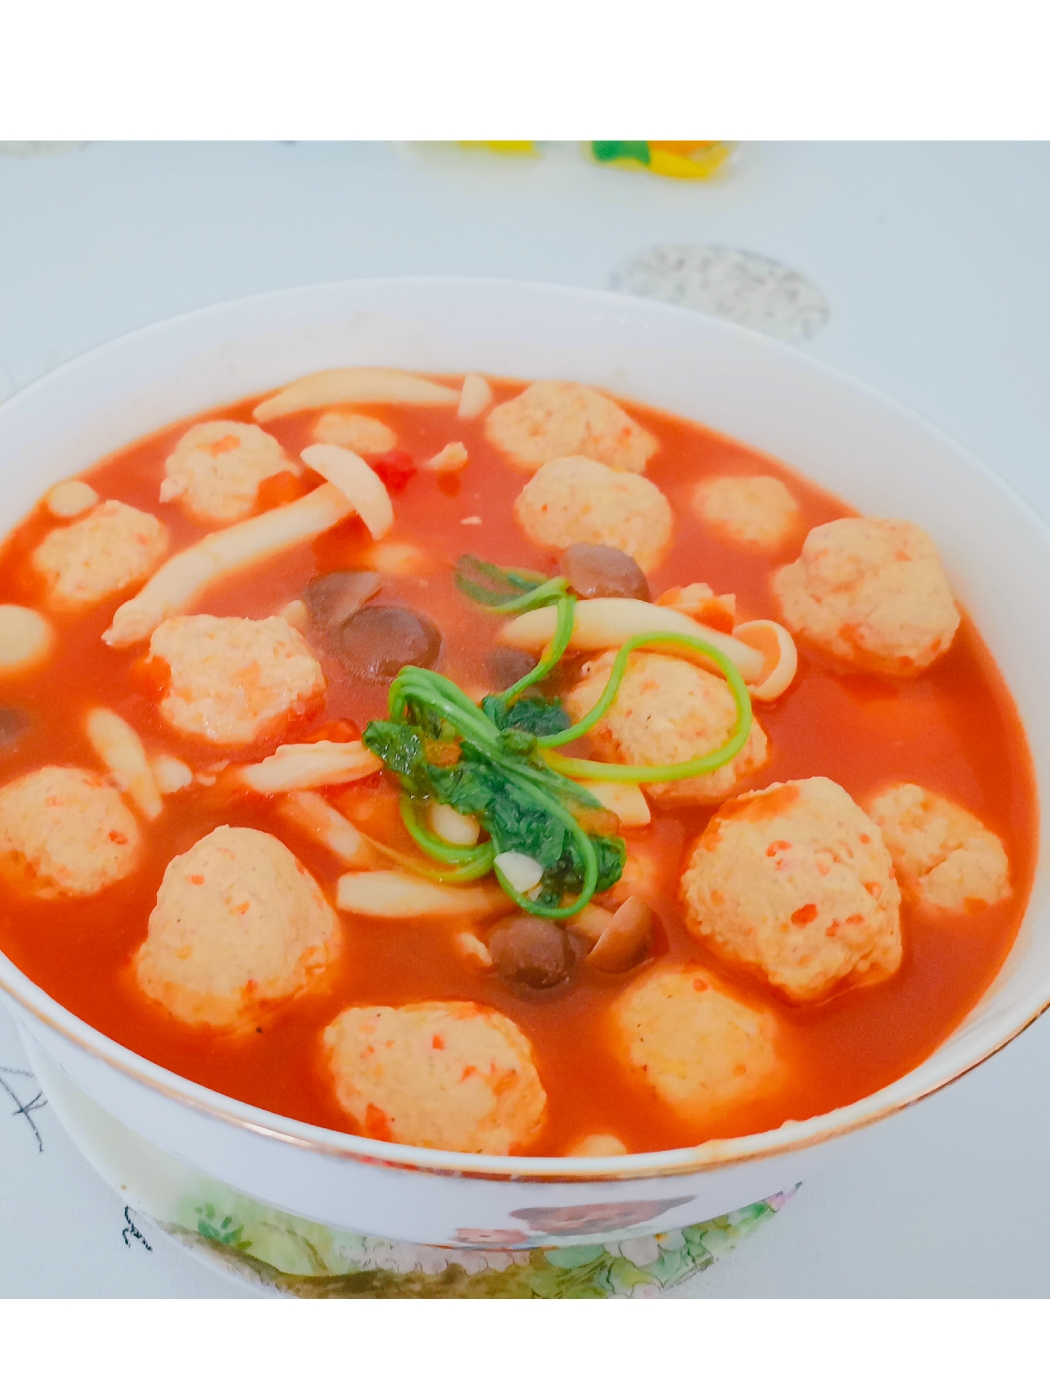 汤汁浓郁的减脂餐—番茄菌菇鸡肉丸